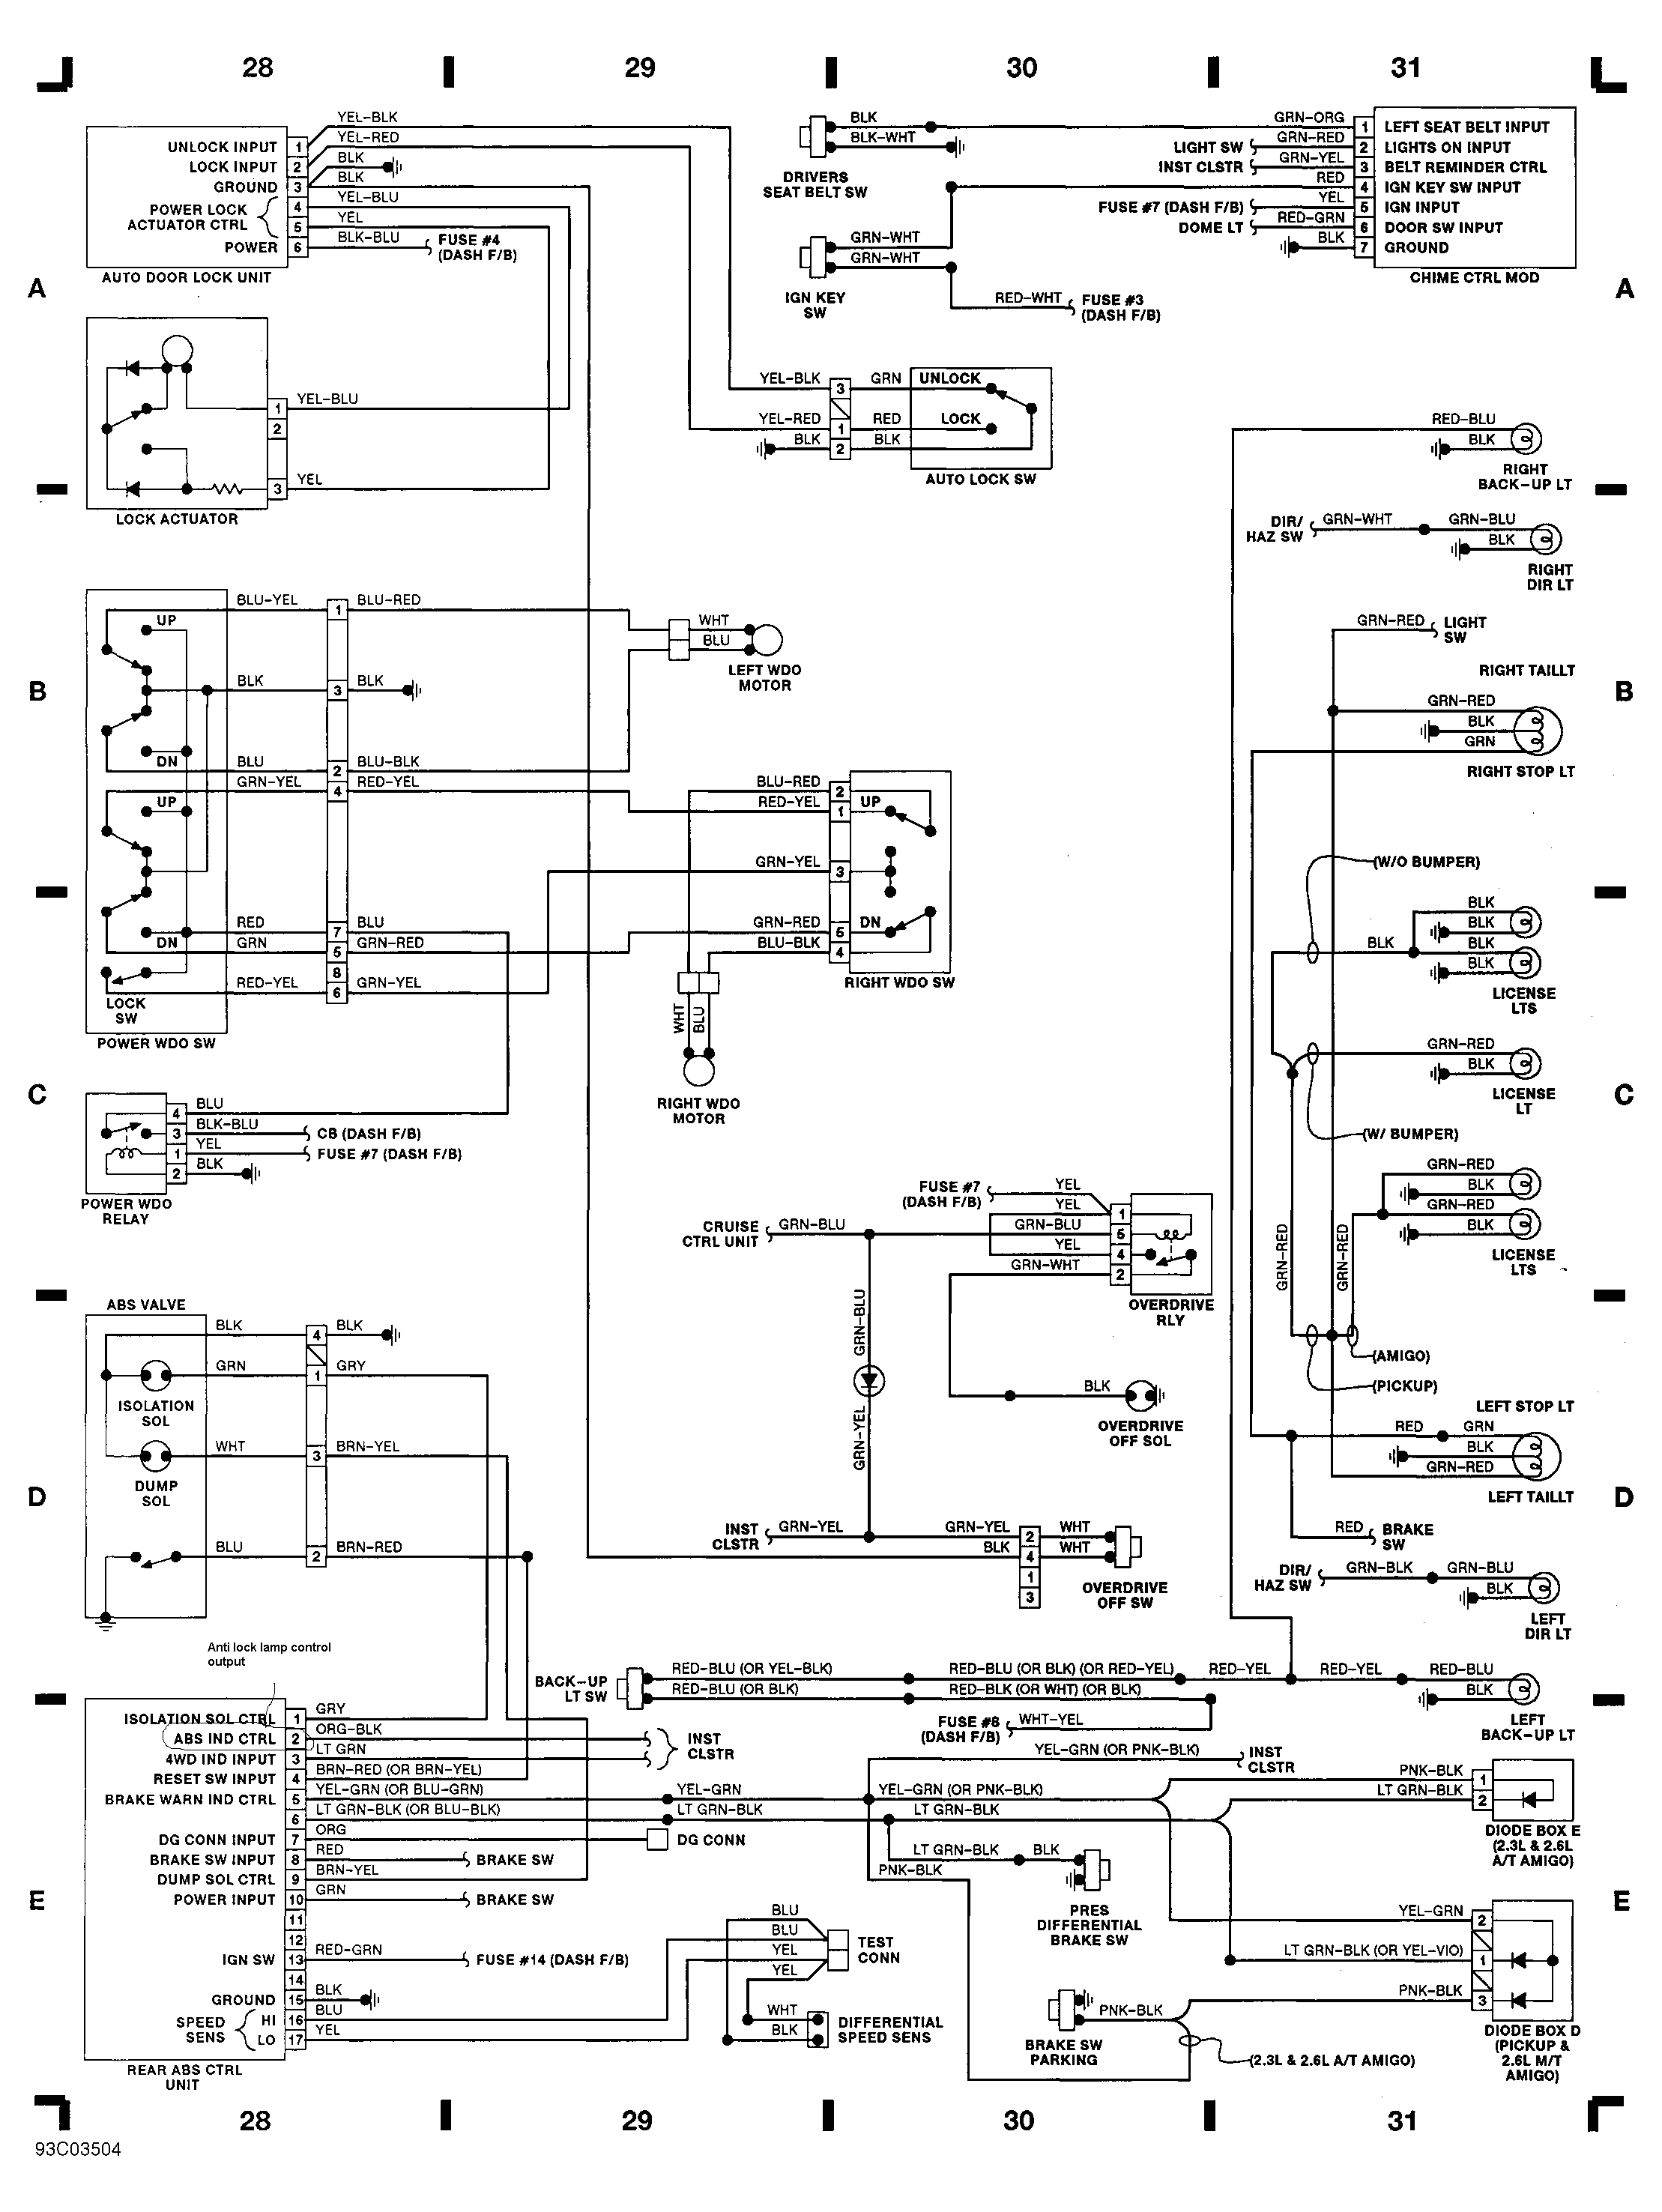 automotive wiring diagram isuzu wiring diagram for isuzu npr isuzu 2006 isuzu npr wiring diagram